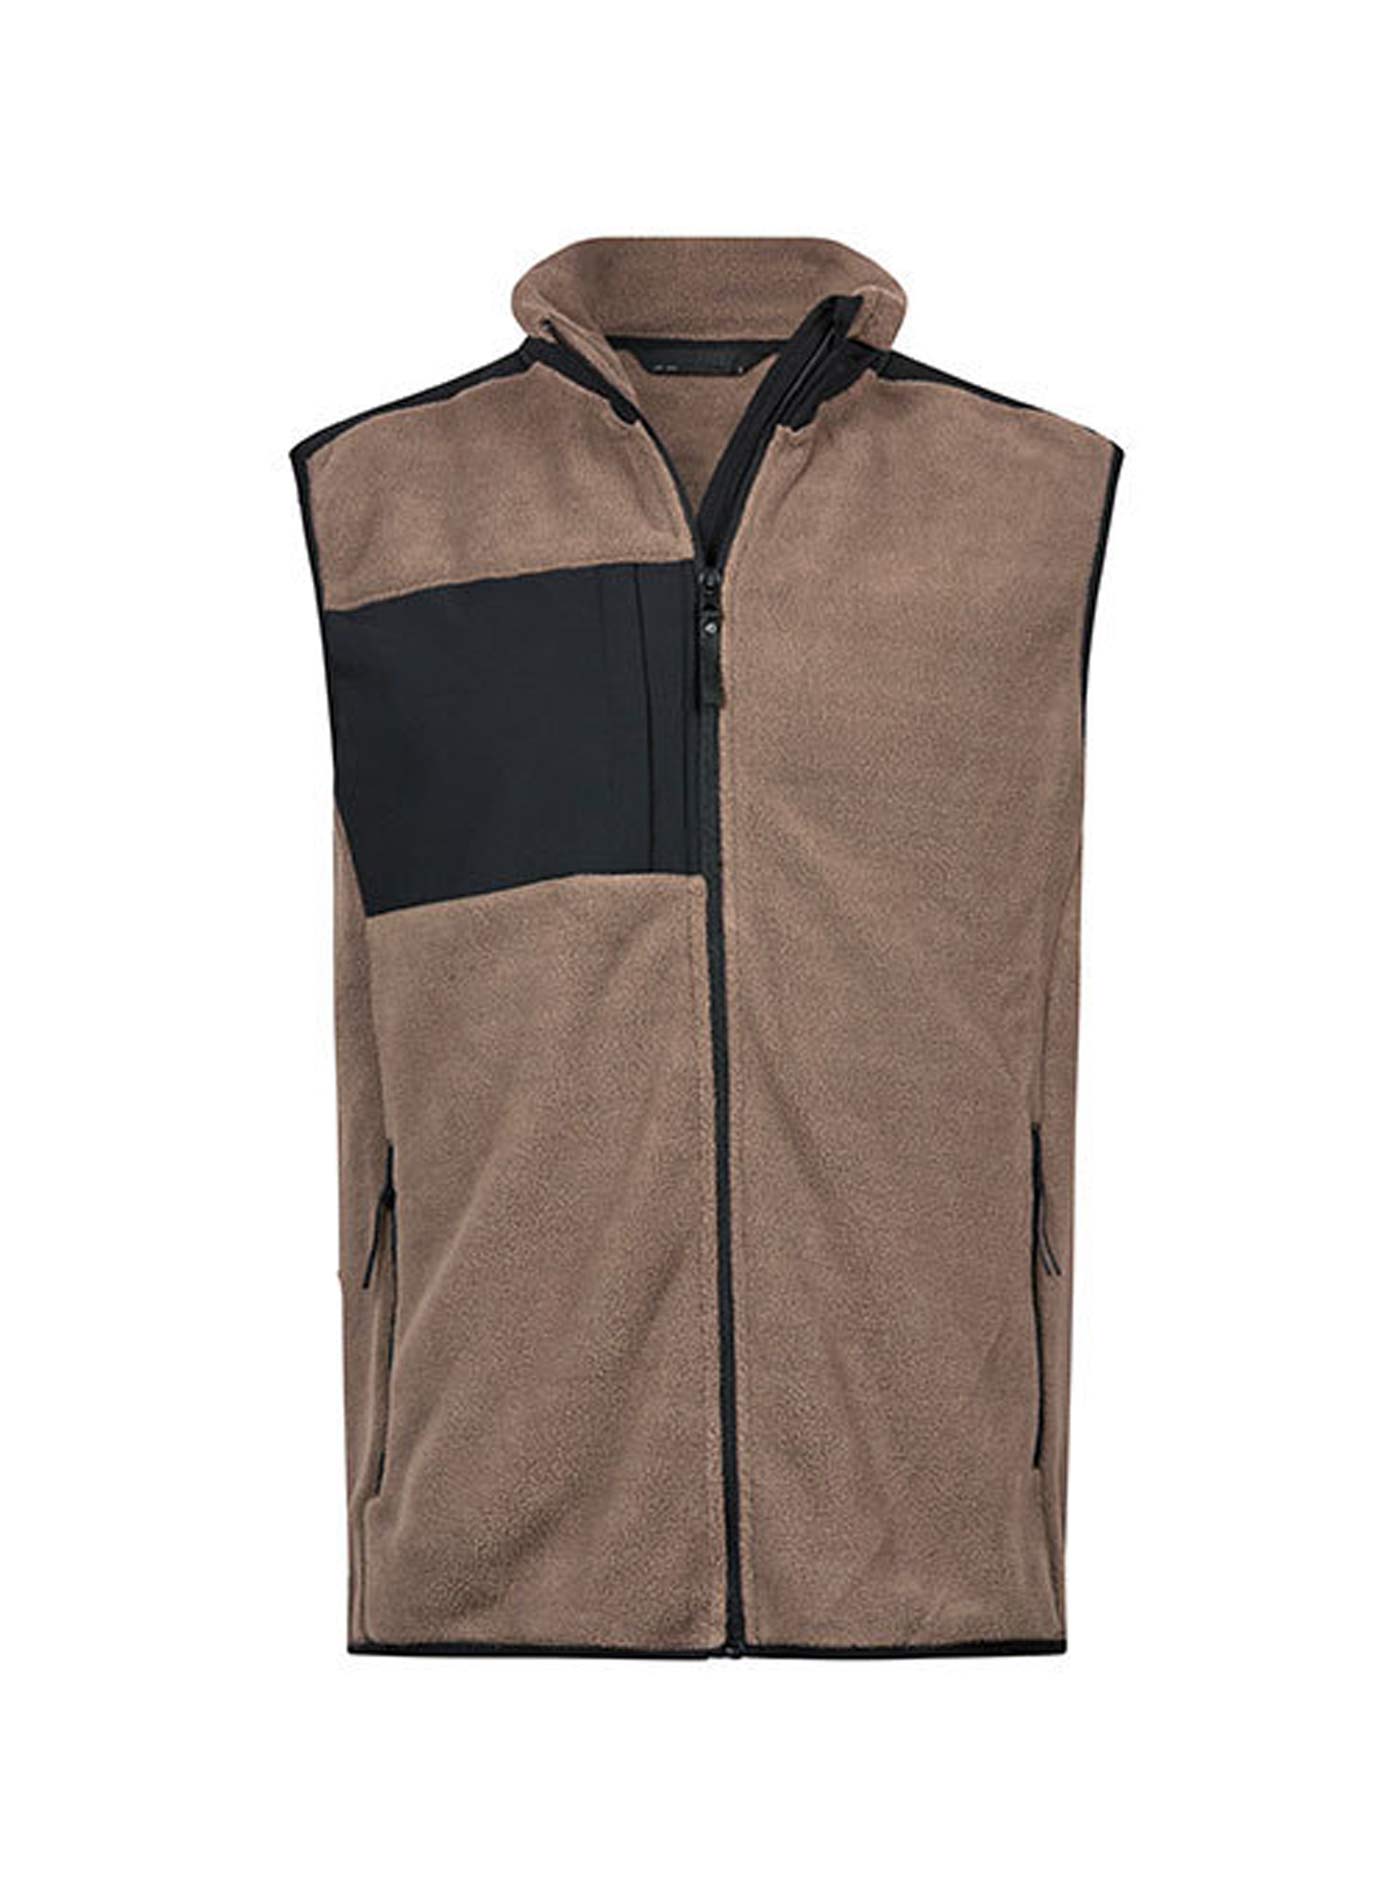 Pánská fleecová vesta Tee Jays Mountain - Hnědá a černá L